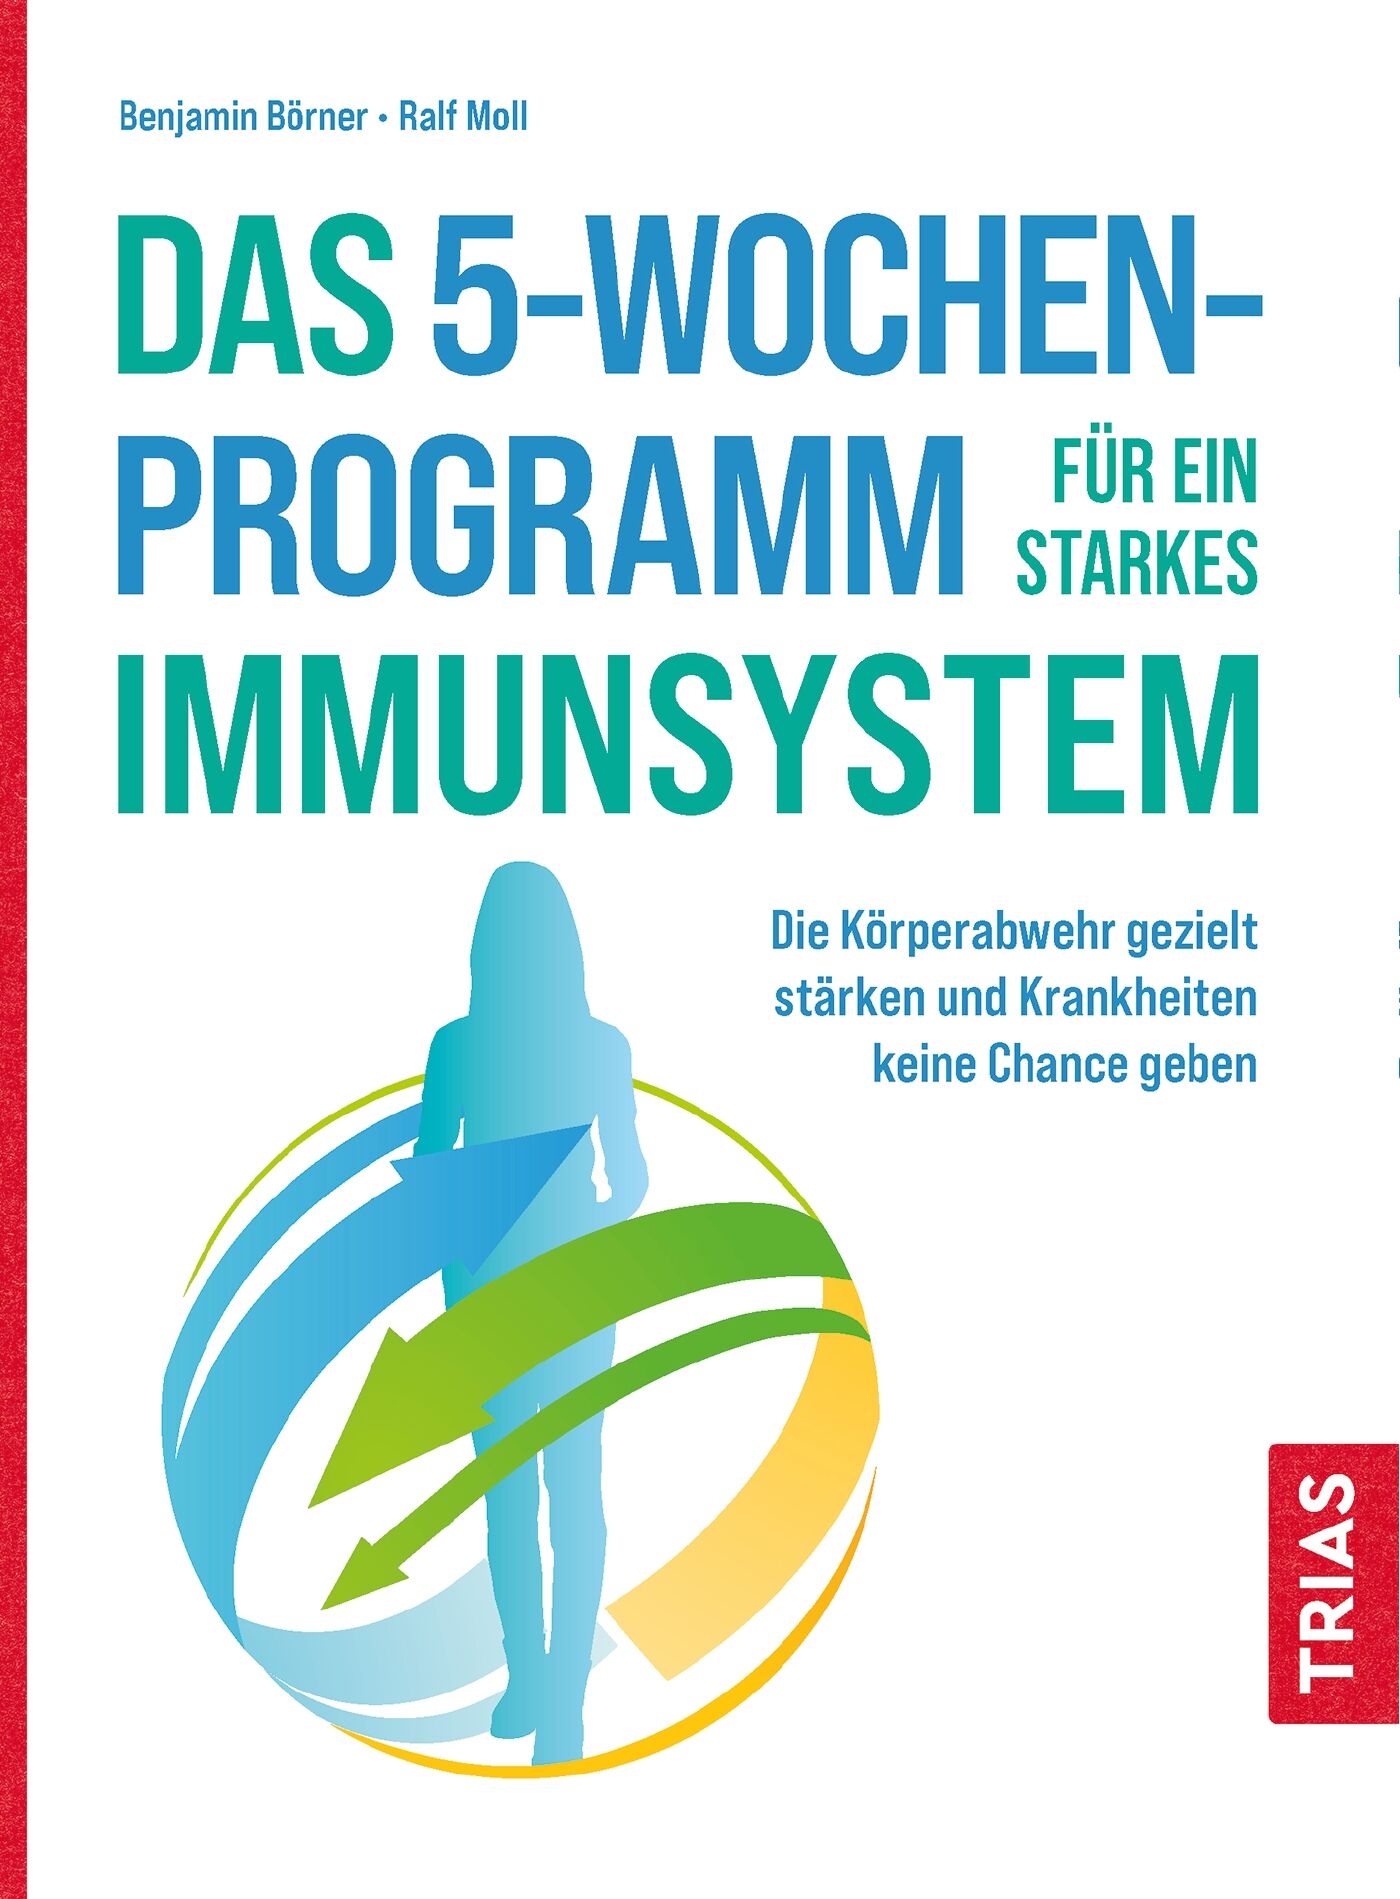 Das 5-Wochen-Programm für ein starkes Immunsystem, 9783432113630